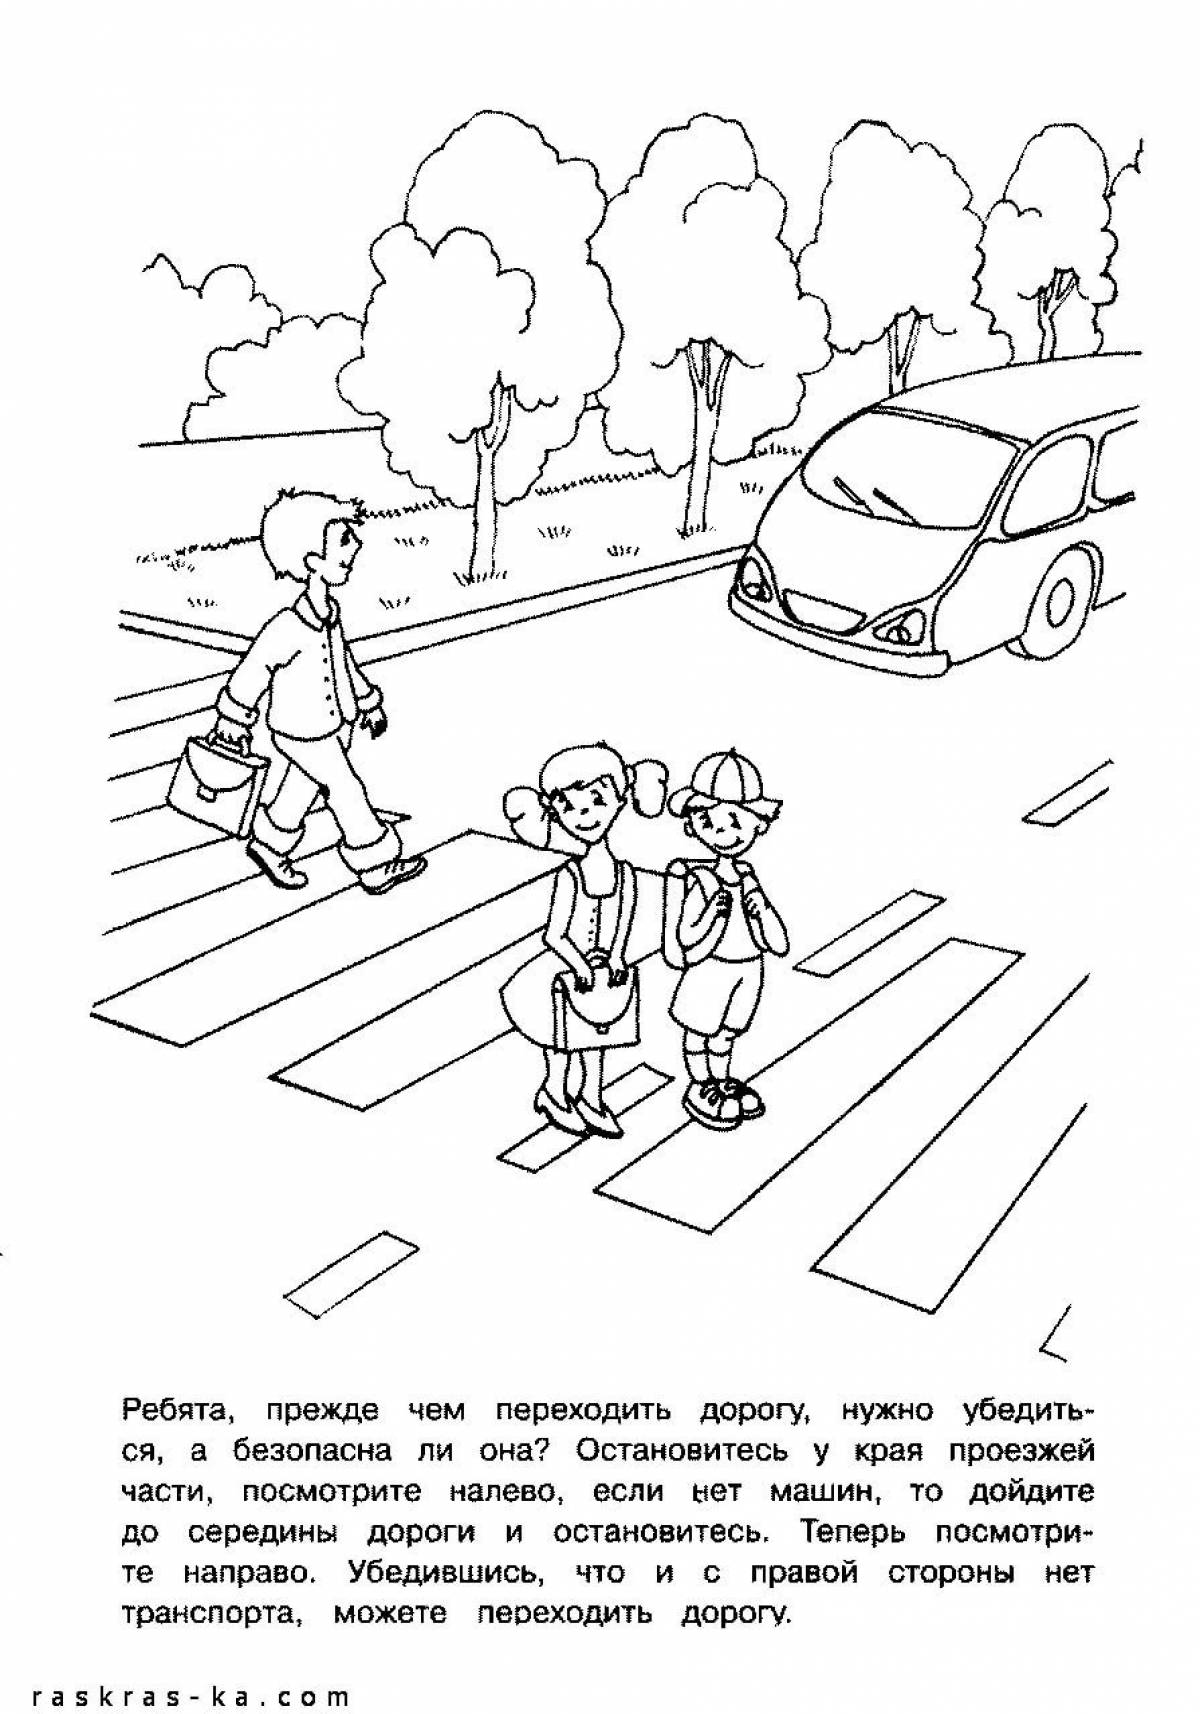 Правила дорожного движения для школьников #15